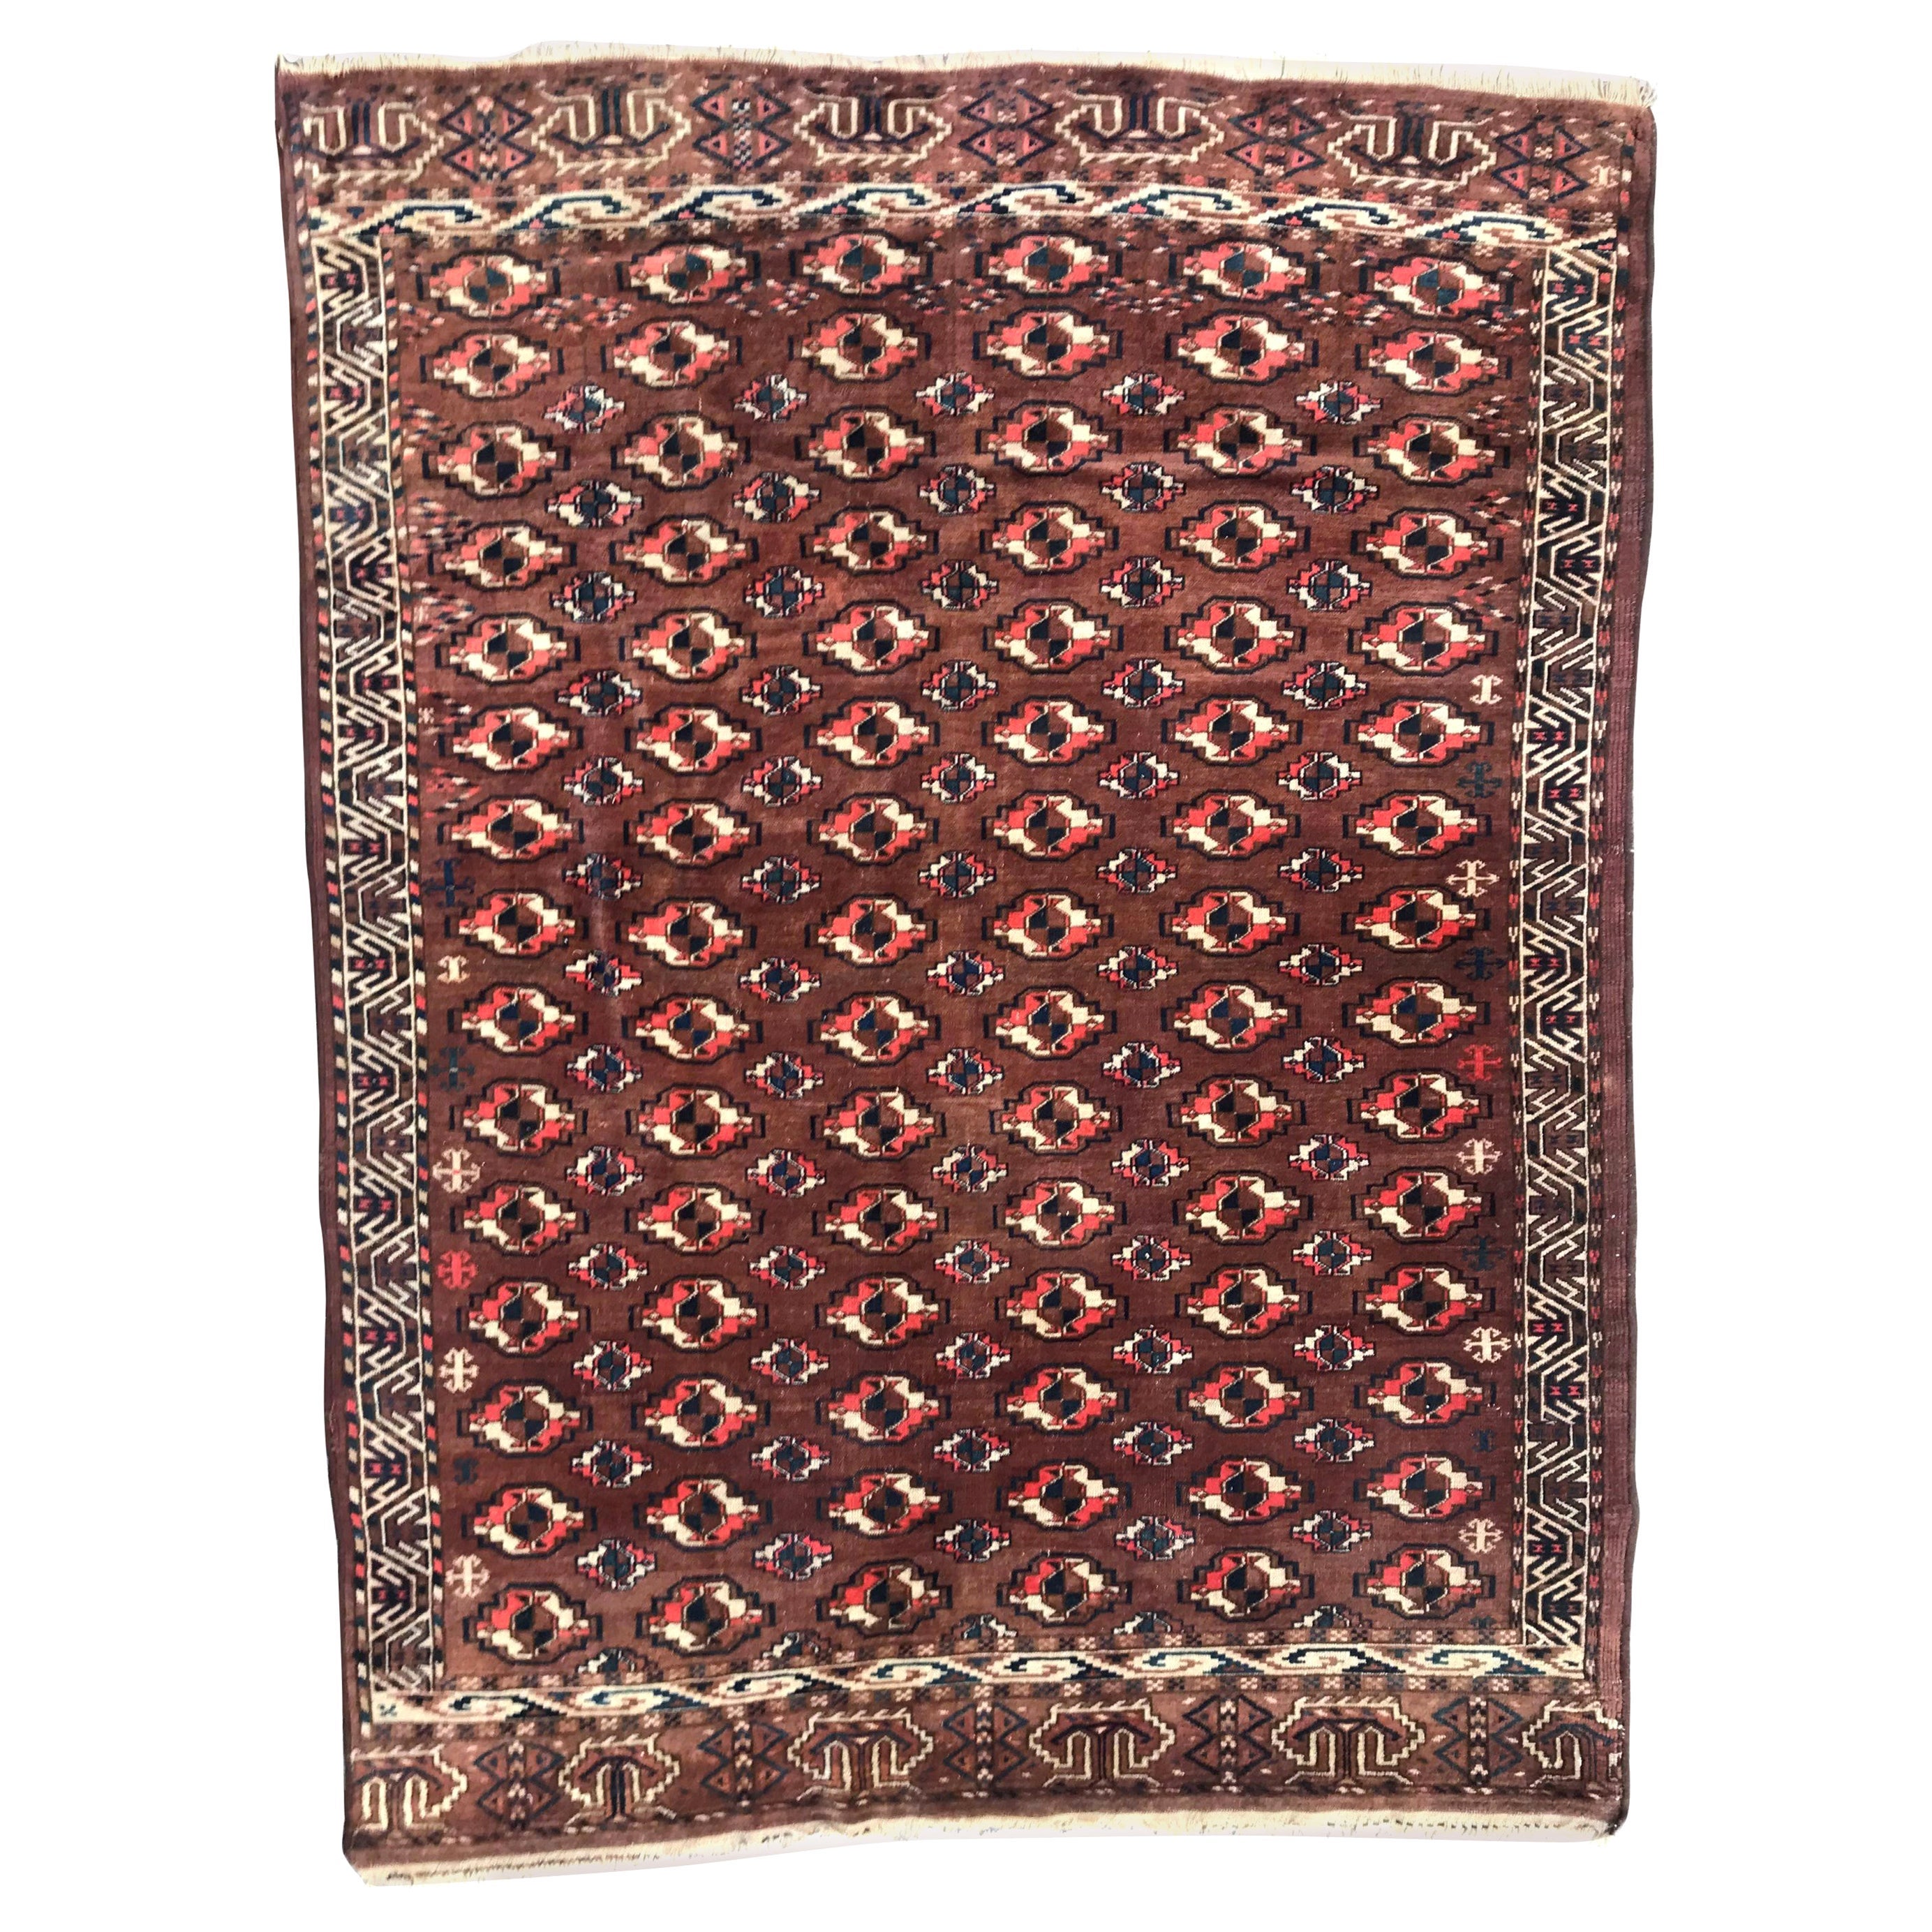 Le magnifique tapis turkmène vintage de Bobyrug